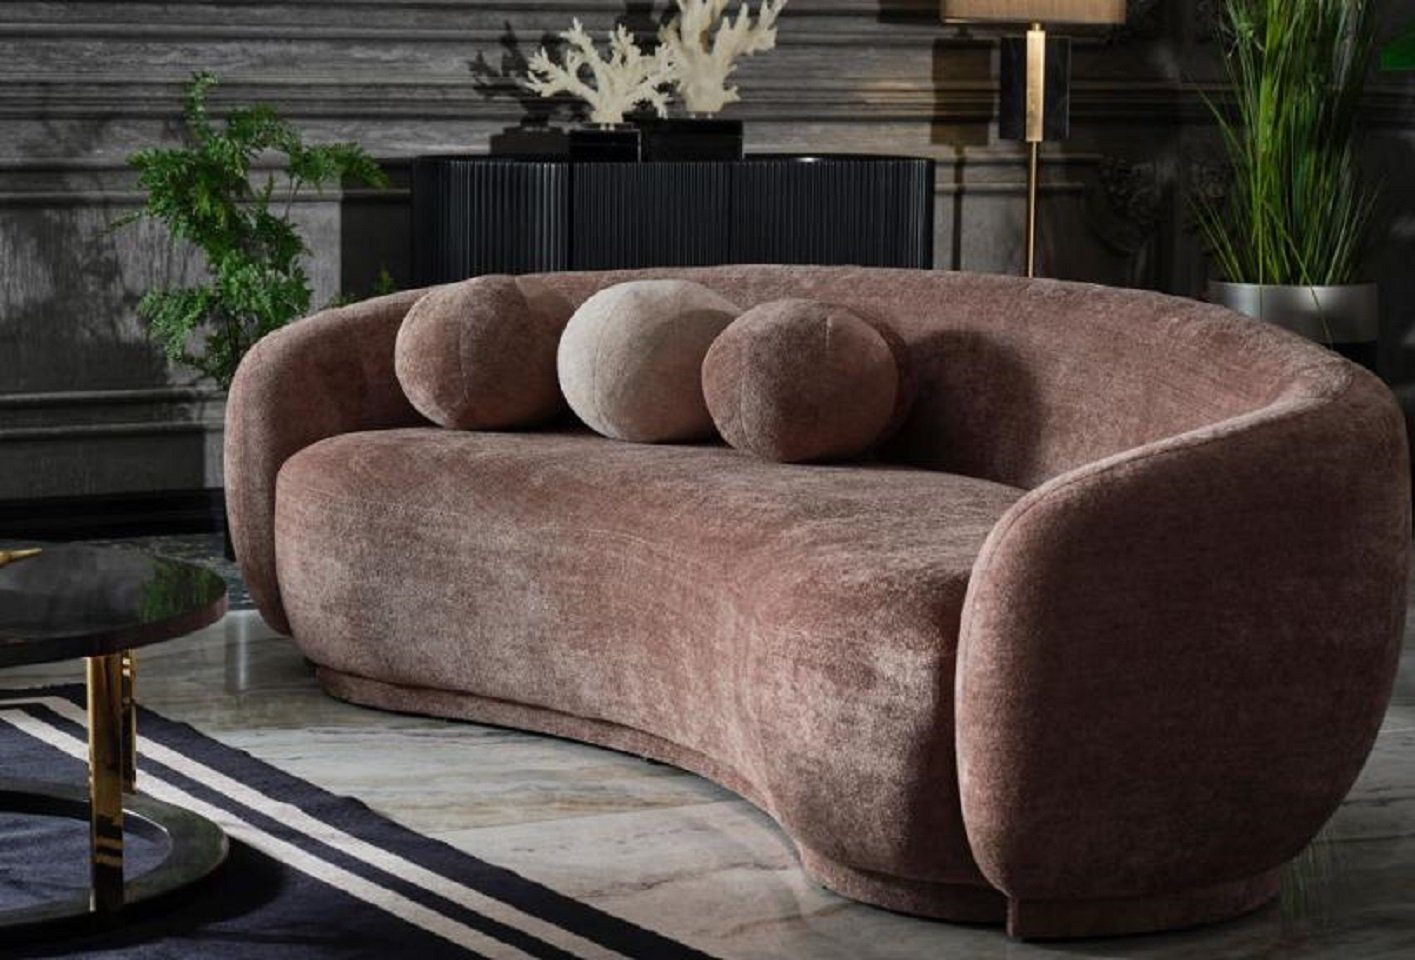 JVmoebel 3-Sitzer Luxus Dreisitzer Couch Sofa 3 Sitzer Braun Polstersofa, 1 Teile, Made in Europa